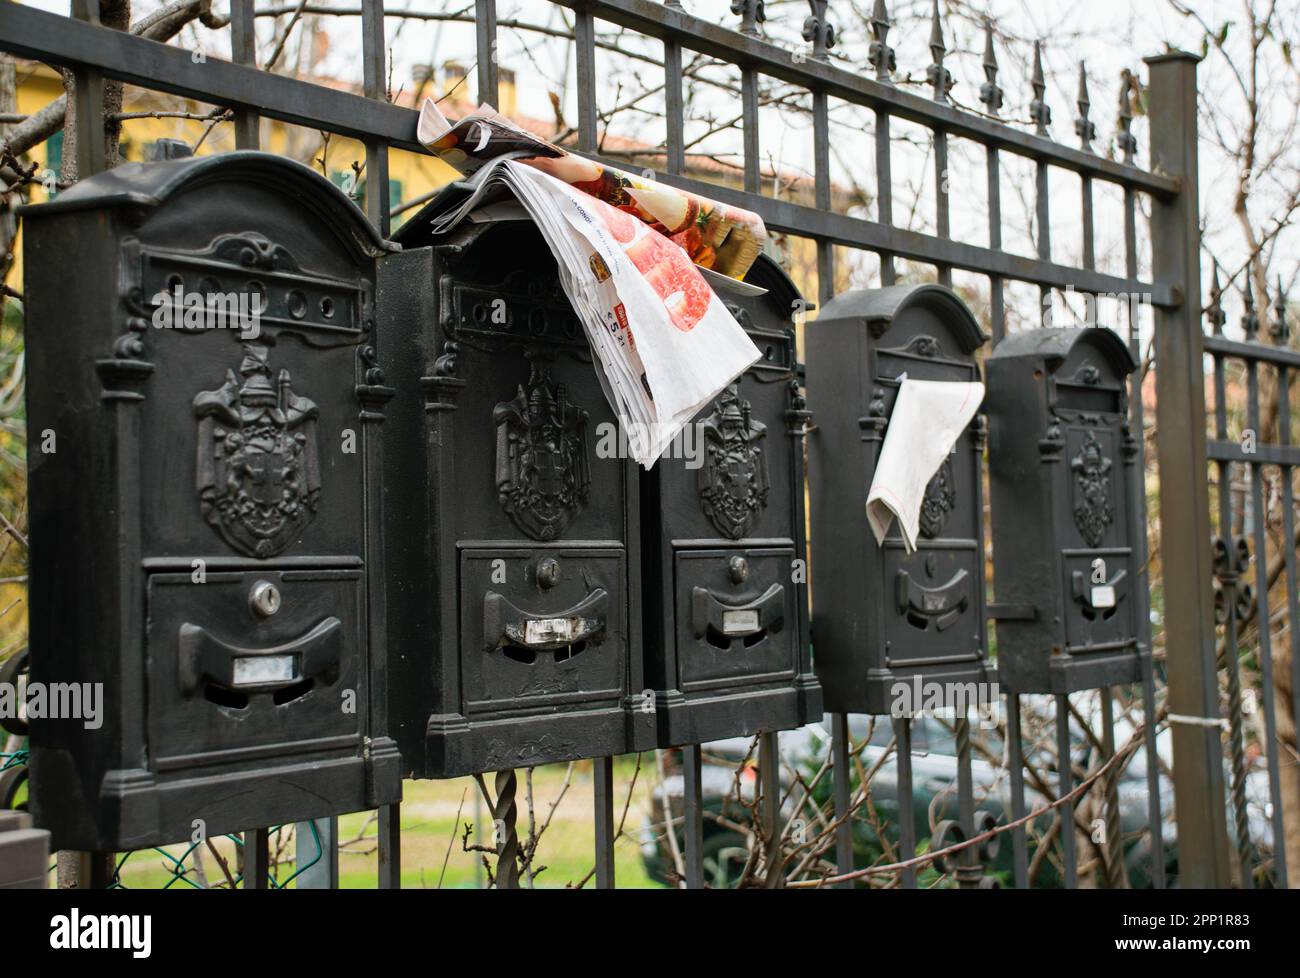 Persecuciones postales sobre el muro de hierro en la calle Foto de stock